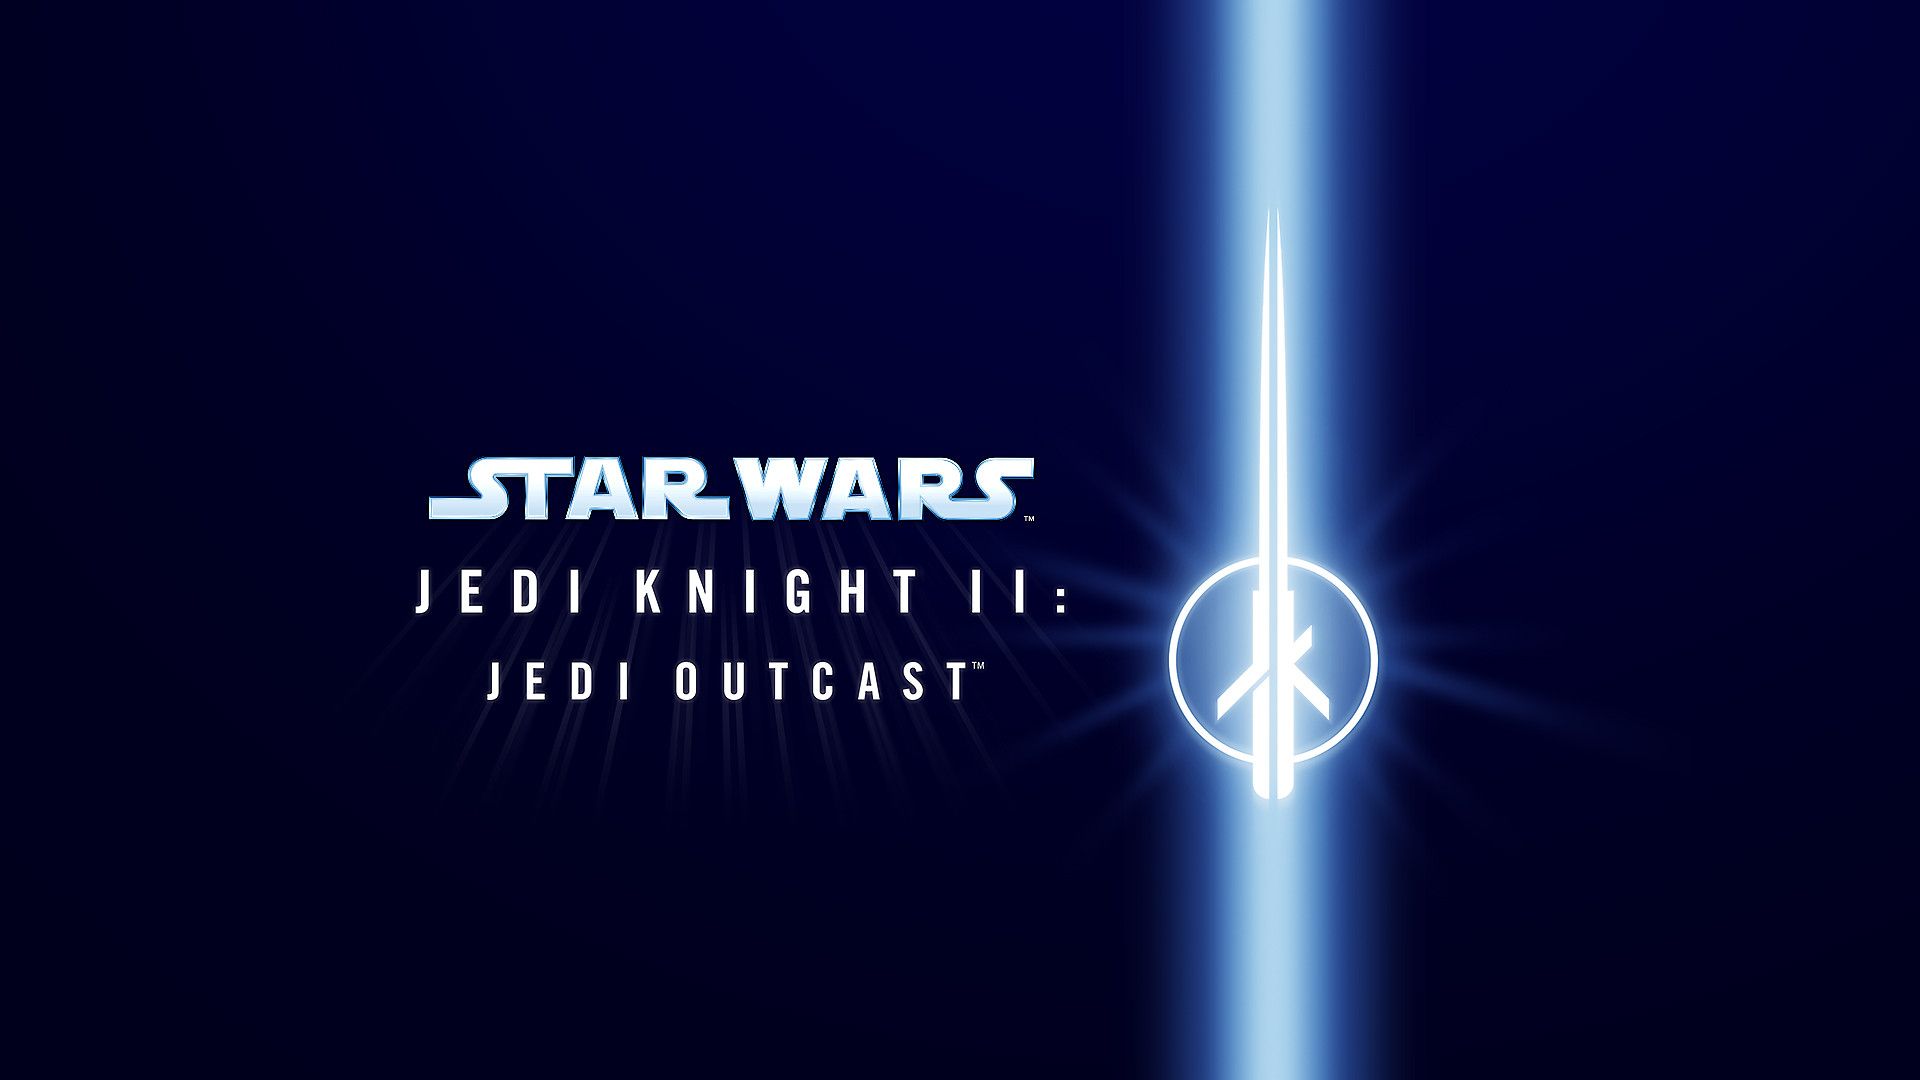 Star Wars Jedi Knight II Jedi Outcast Review